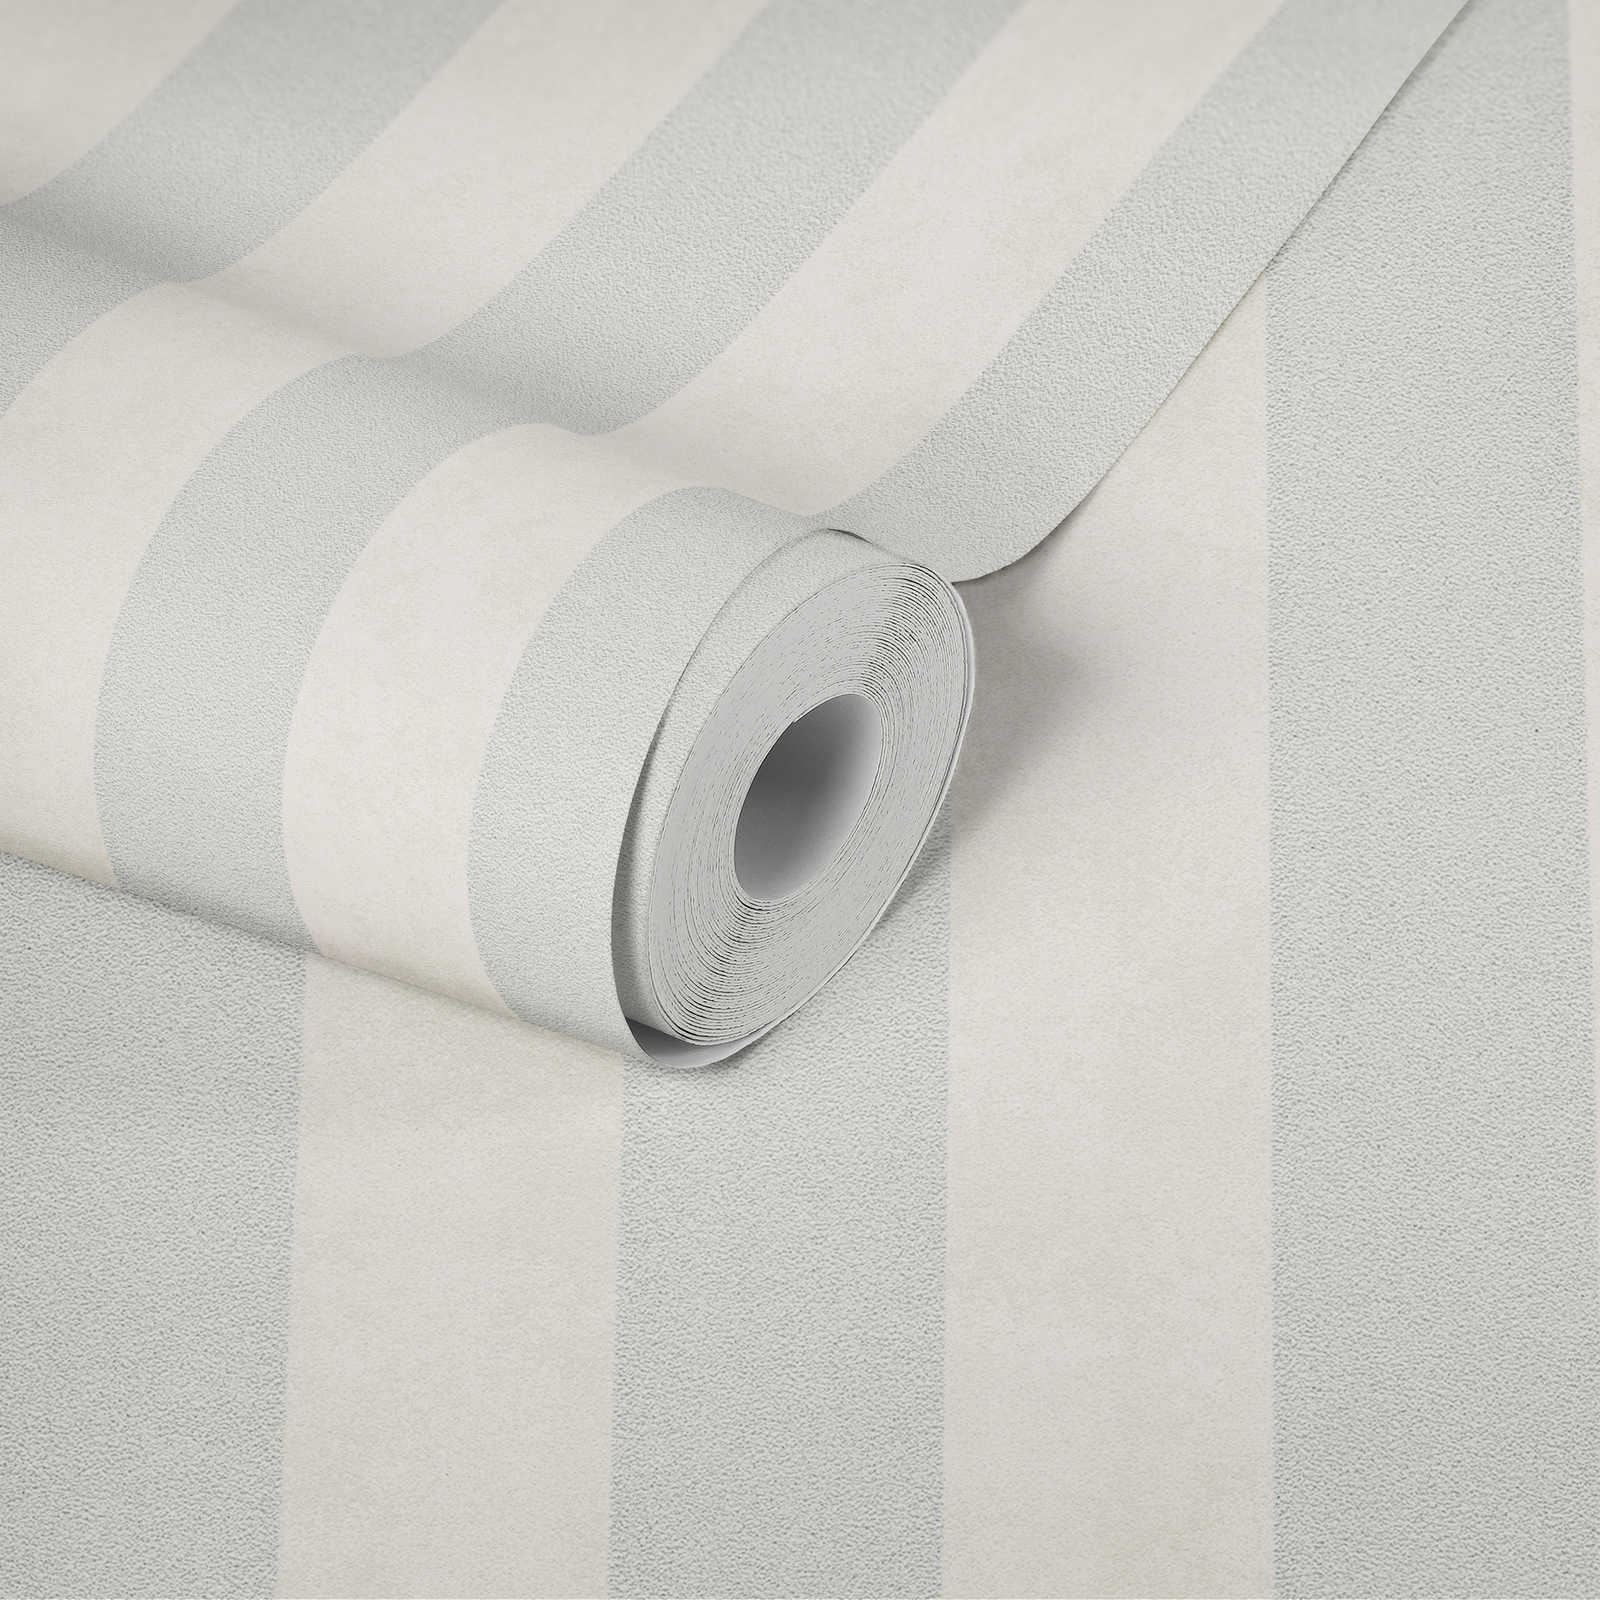             Papier peint à rayures en bloc avec motifs colorés et texturés - argenté, gris, blanc
        